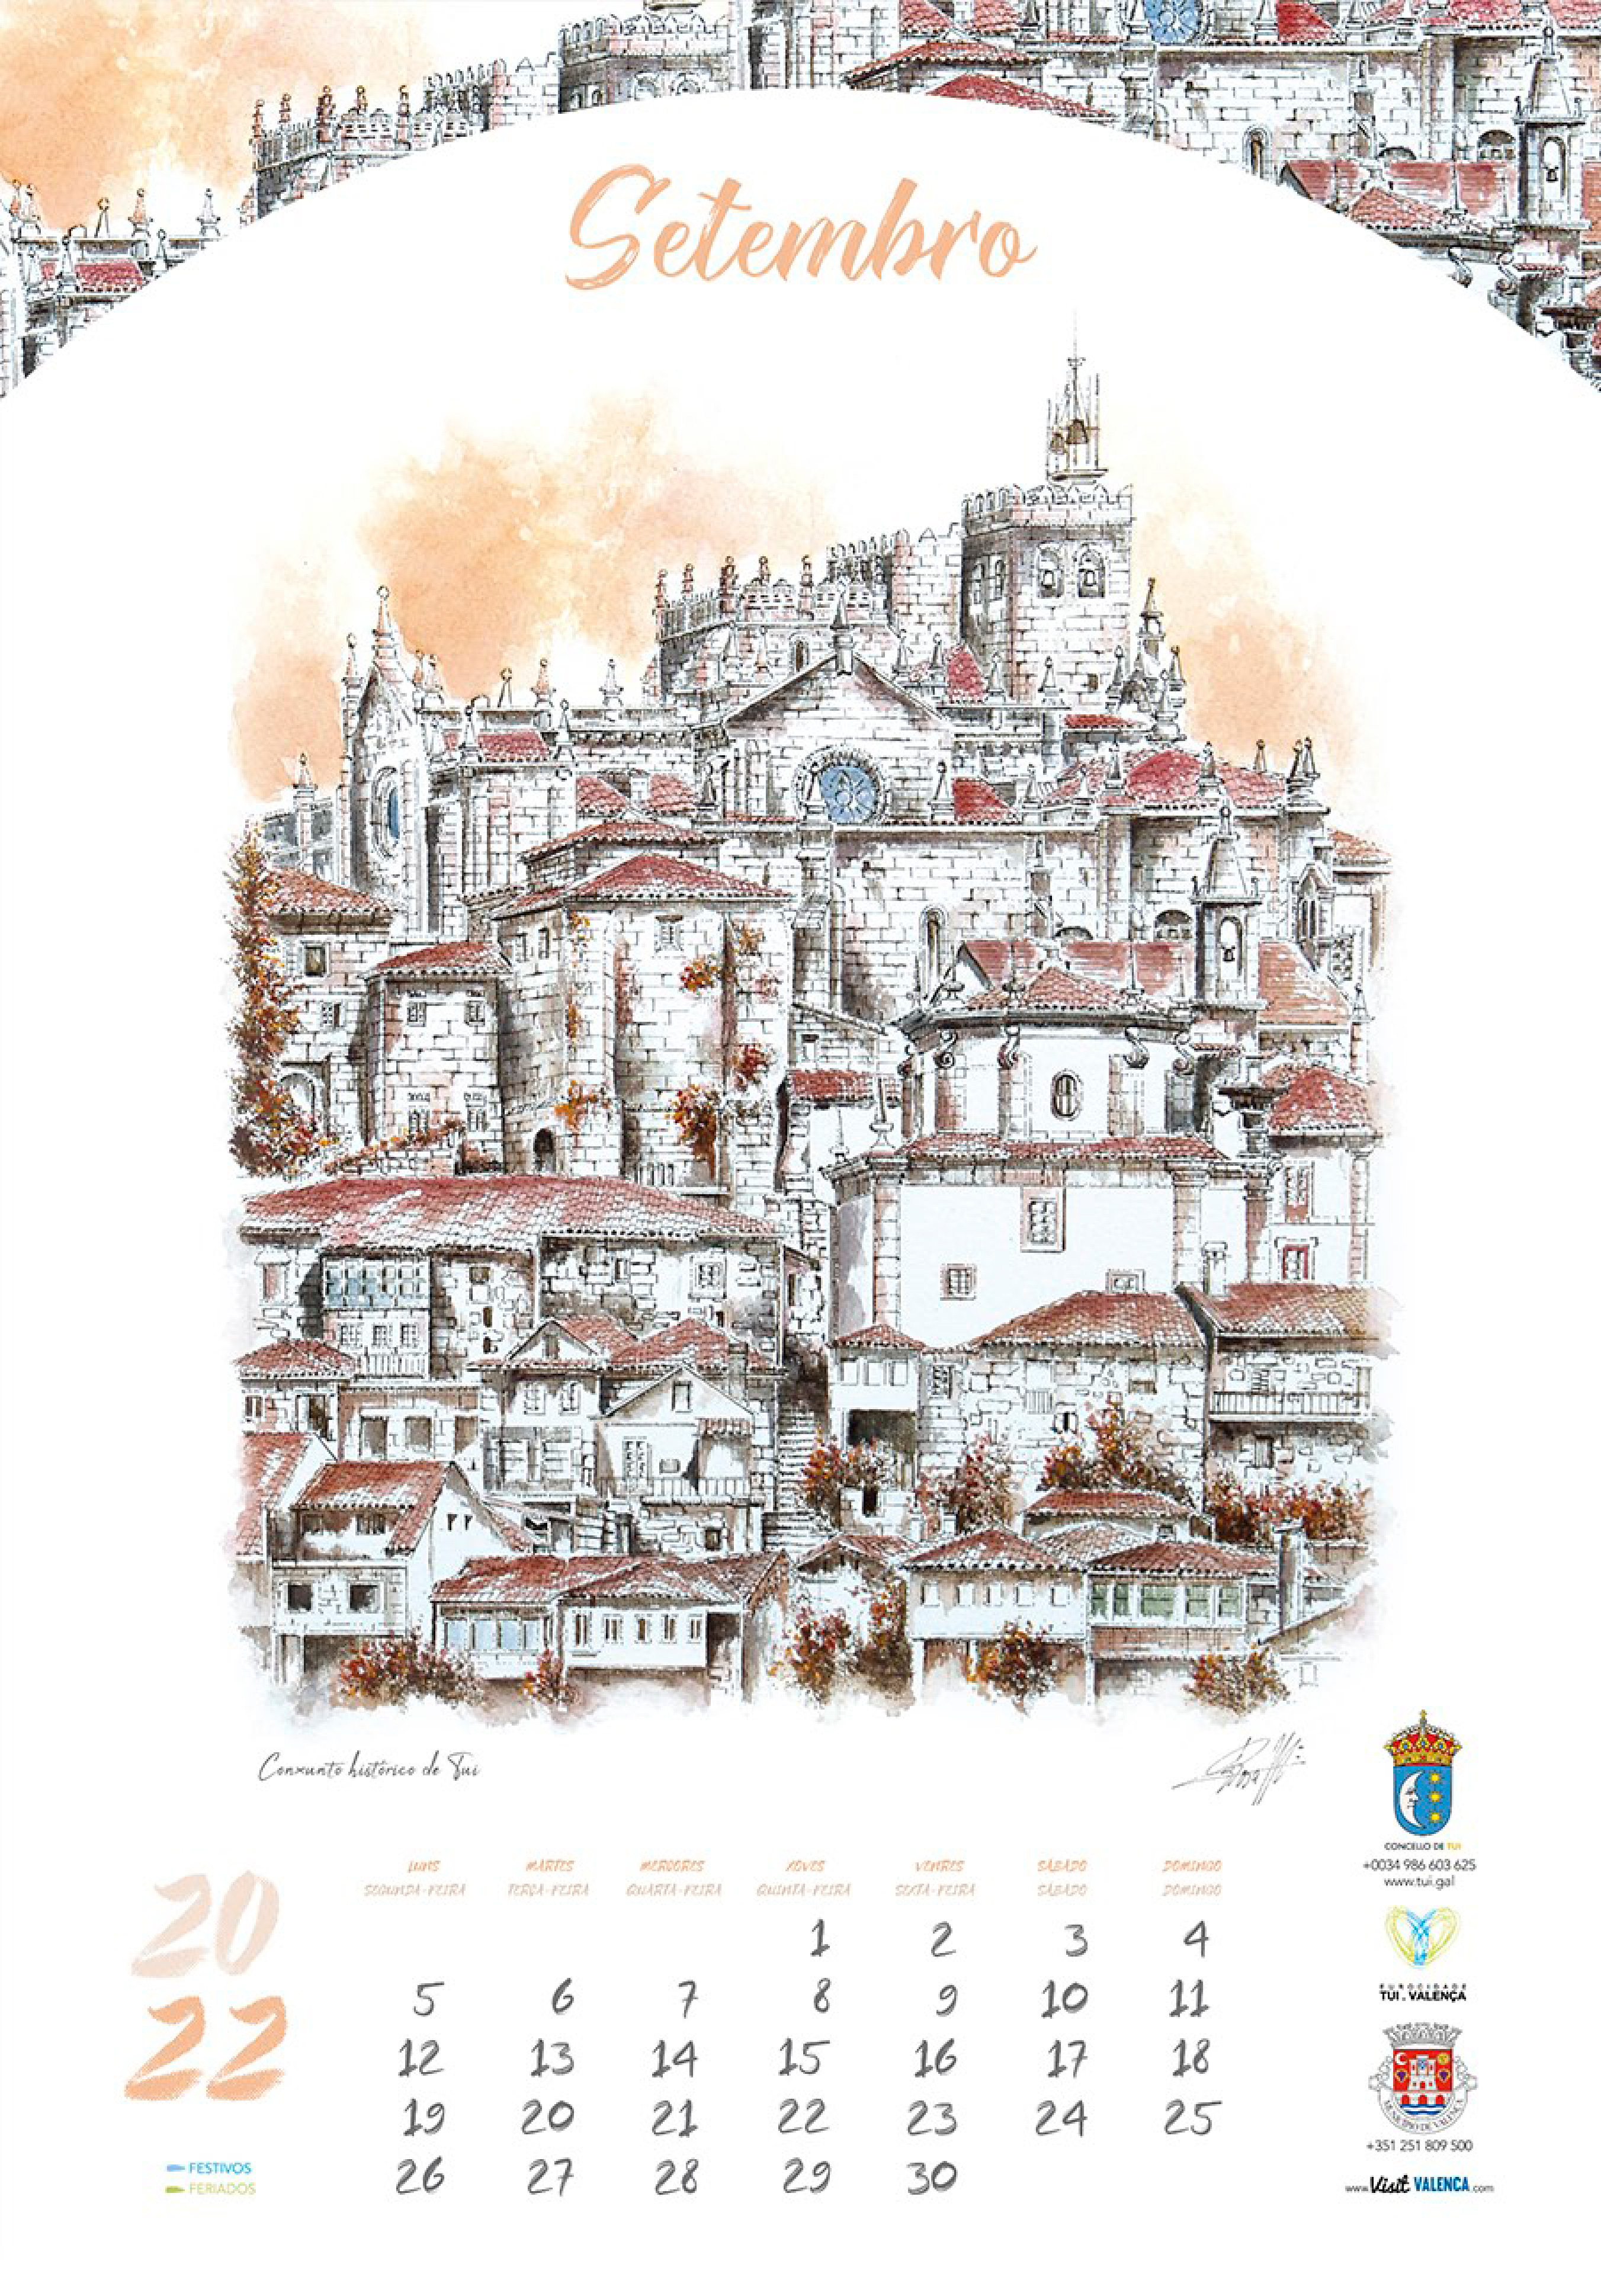 Calendario-Eurocidade-2022-9-Setembro